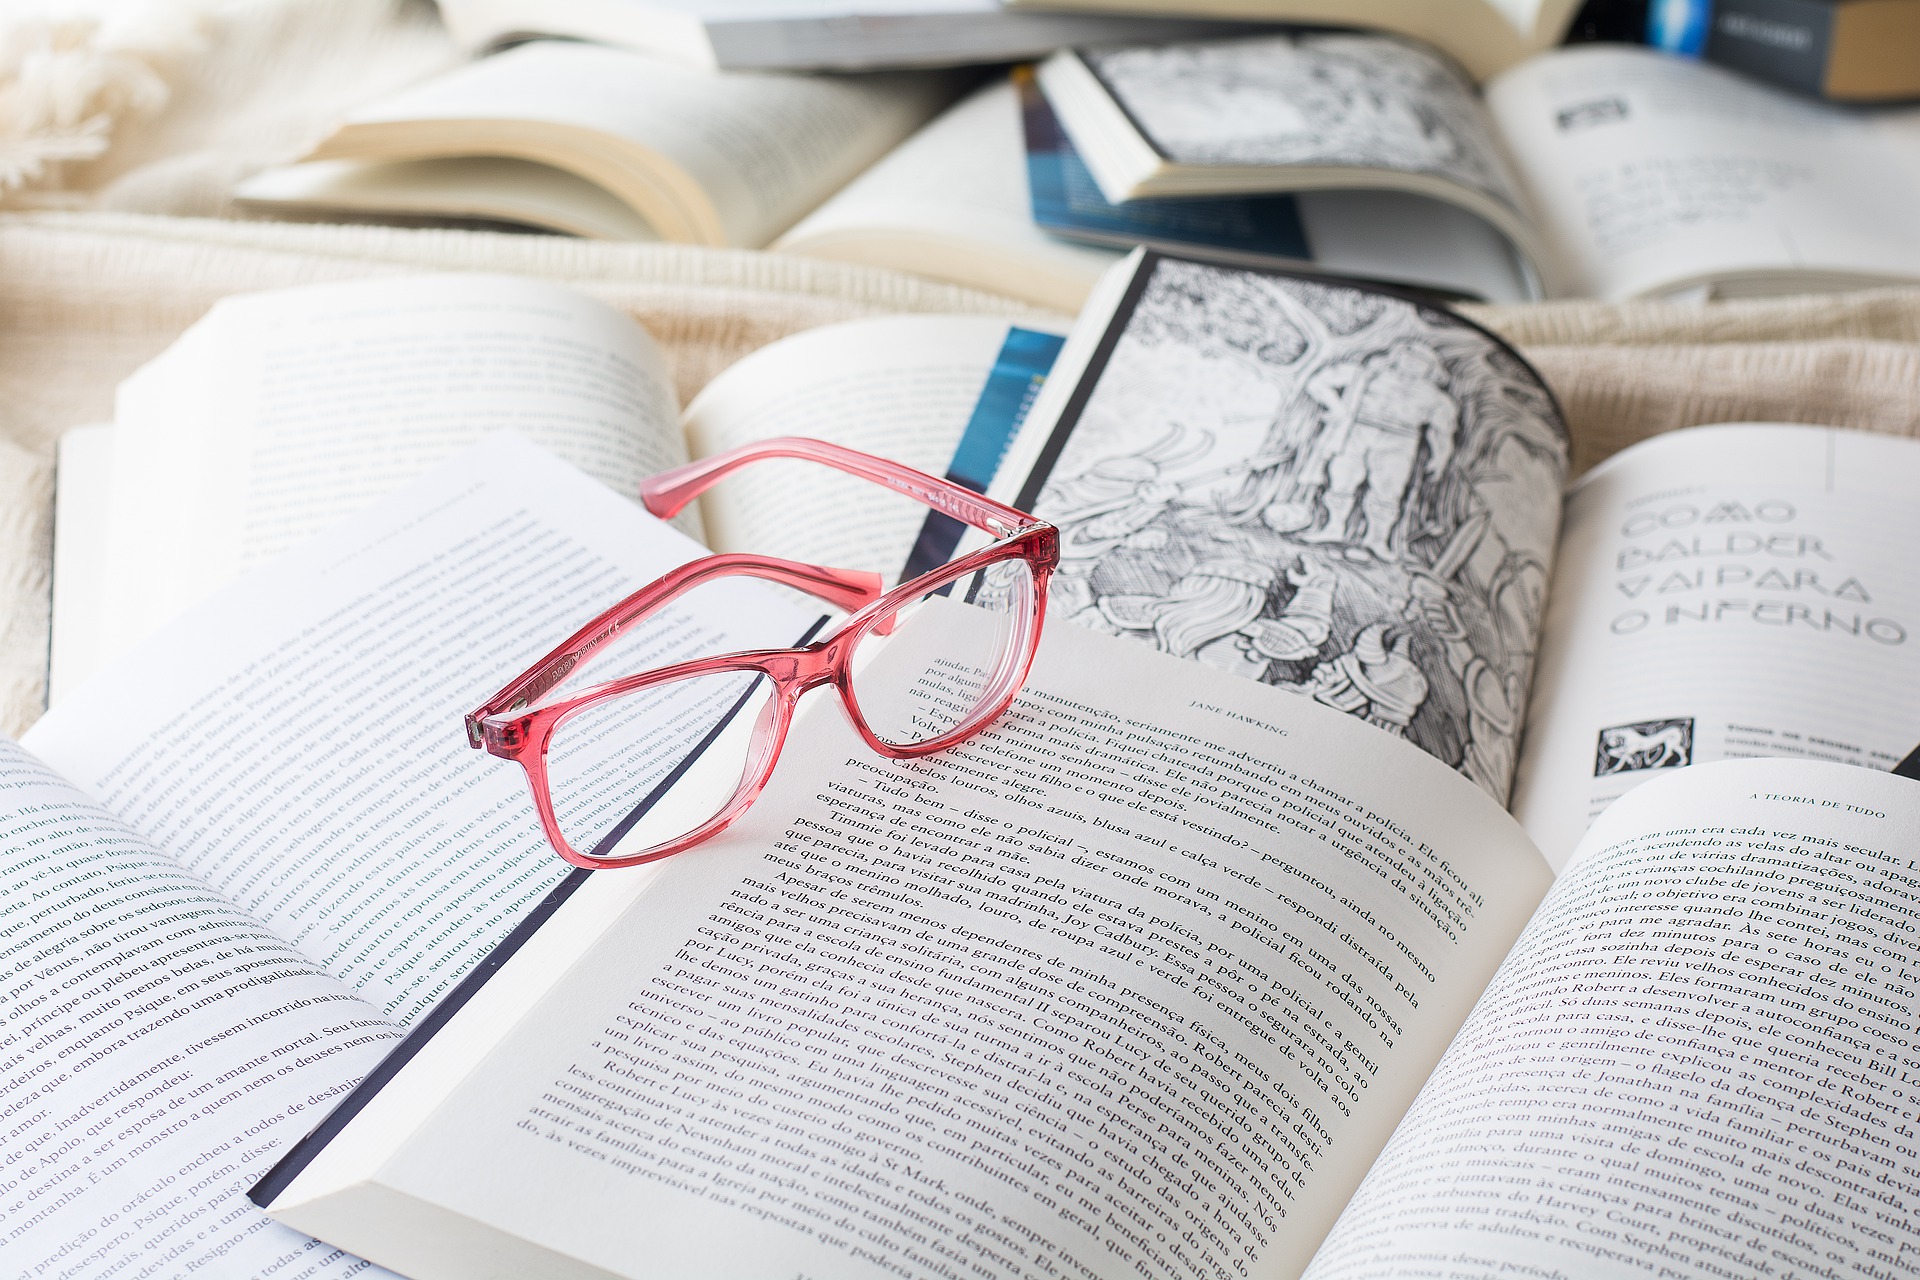 Los amantes de los libros tienen en Filgua virtual una opción para obtener nuevos títulos. Foto AnaPaula Feriani en Pixabay